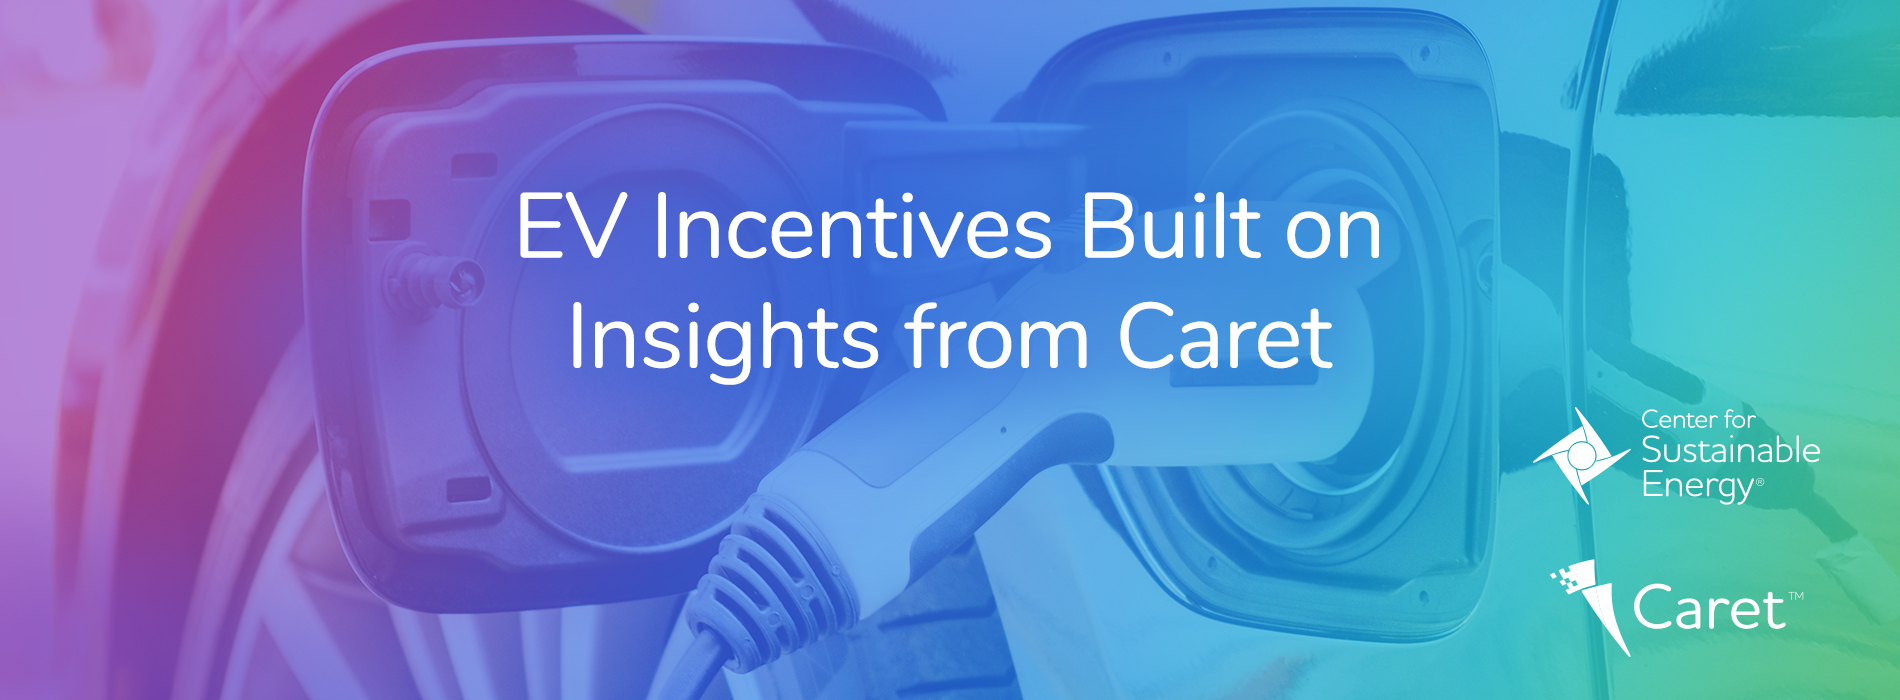 EV Incentives Built on Insights from Caret